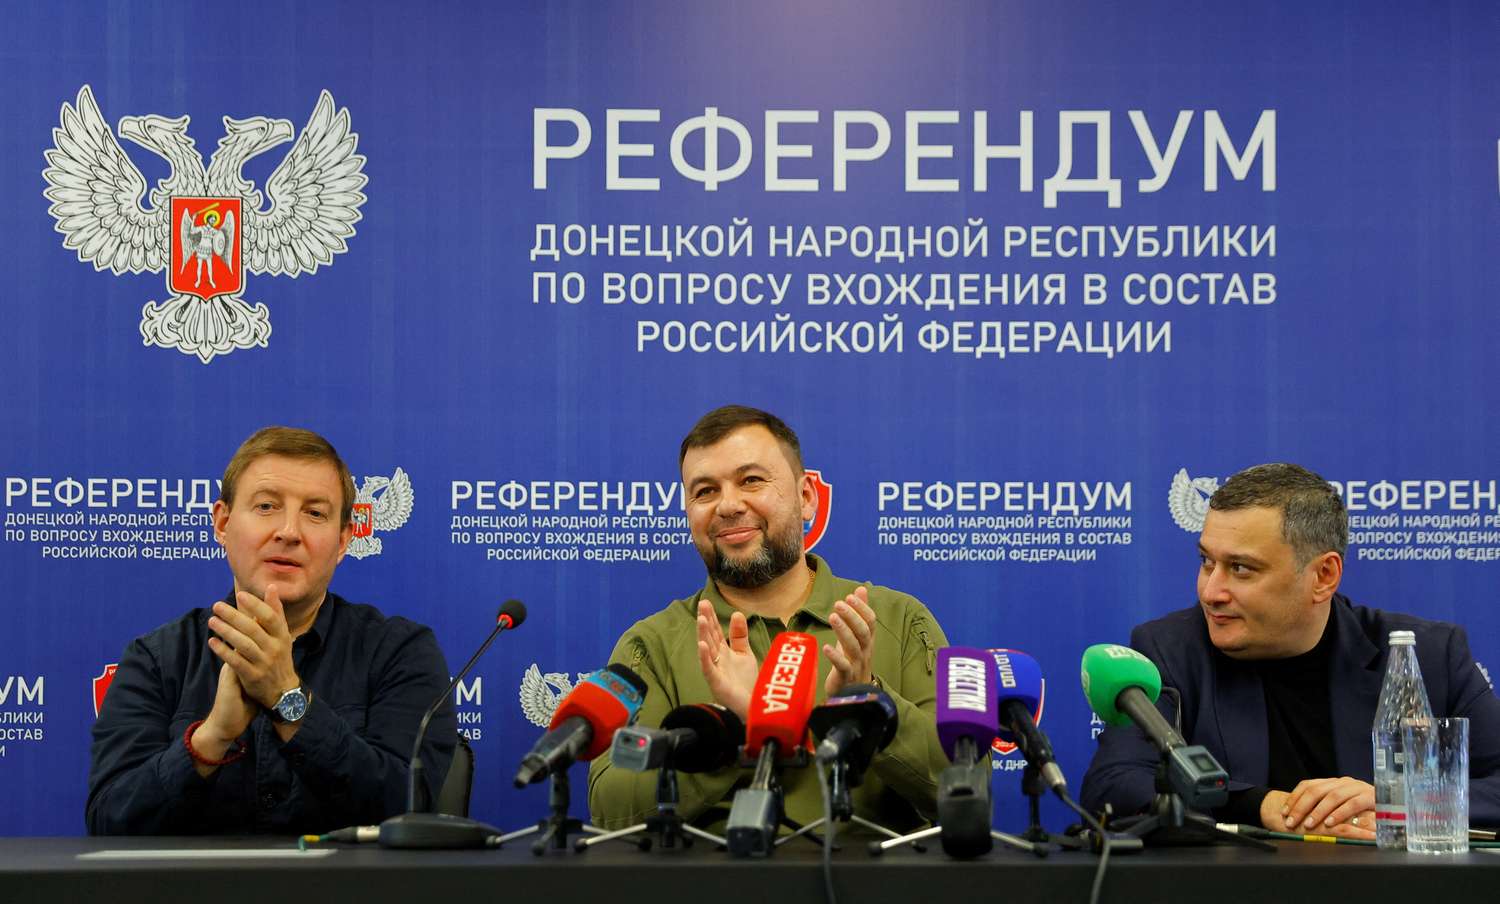 El jefe de la autoproclamada República Popular de Donetsk, Denis Pushilin; el presidente del Comité de la Duma Estatal de Rusia, Aleksandr Khinshtein; y el secretario del Consejo General del Partido Rusia Unida, Andrey Turchak, durante una rueda de prensa